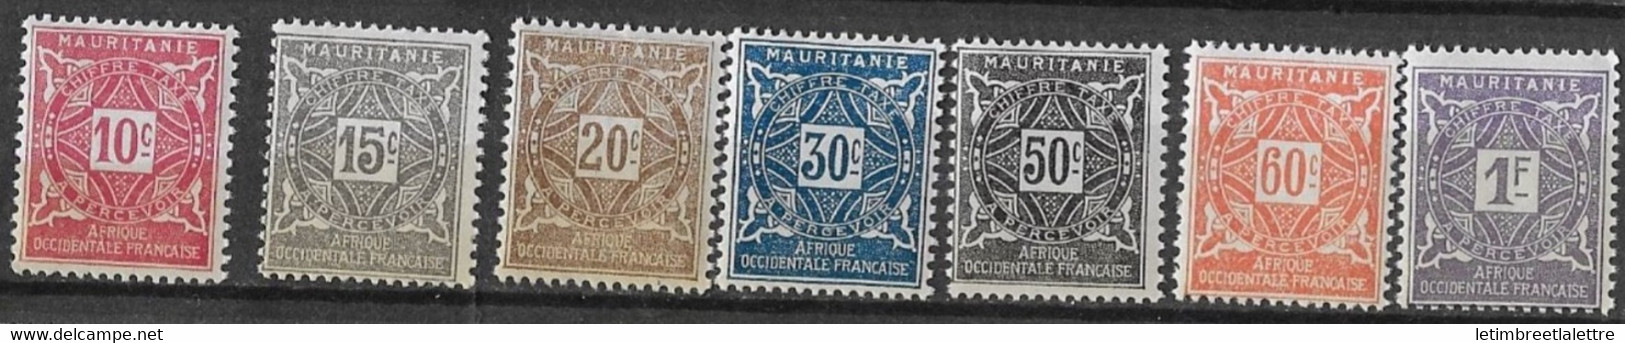 ⭐ Mauritanie - Taxe - YT N° 18 à 24 ** - Neuf Sans Charnière - 1914 ⭐ - Neufs